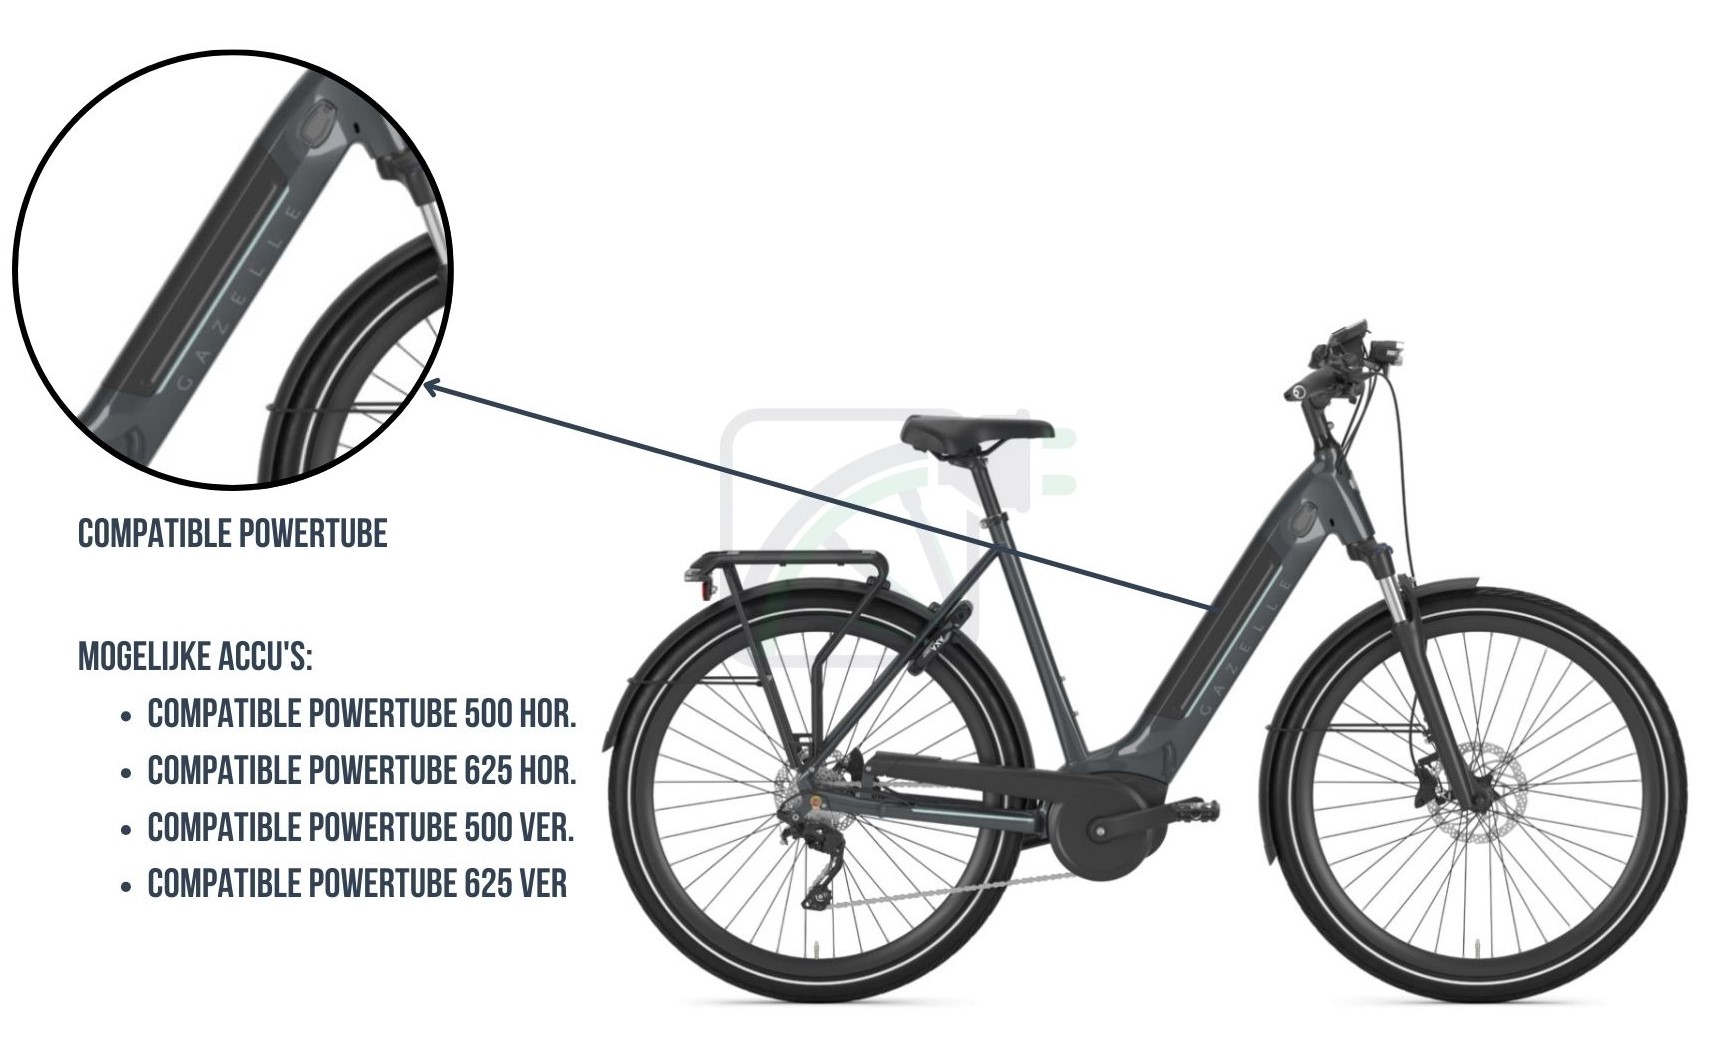 Een deel van de afbeelding is uitvergroot en de accu van de fiets is uitgelicht. De mogelijke accu's voor deze elektrische fiets worden ook genoemd. Dit zijn compatibele Bosch Powertubes.